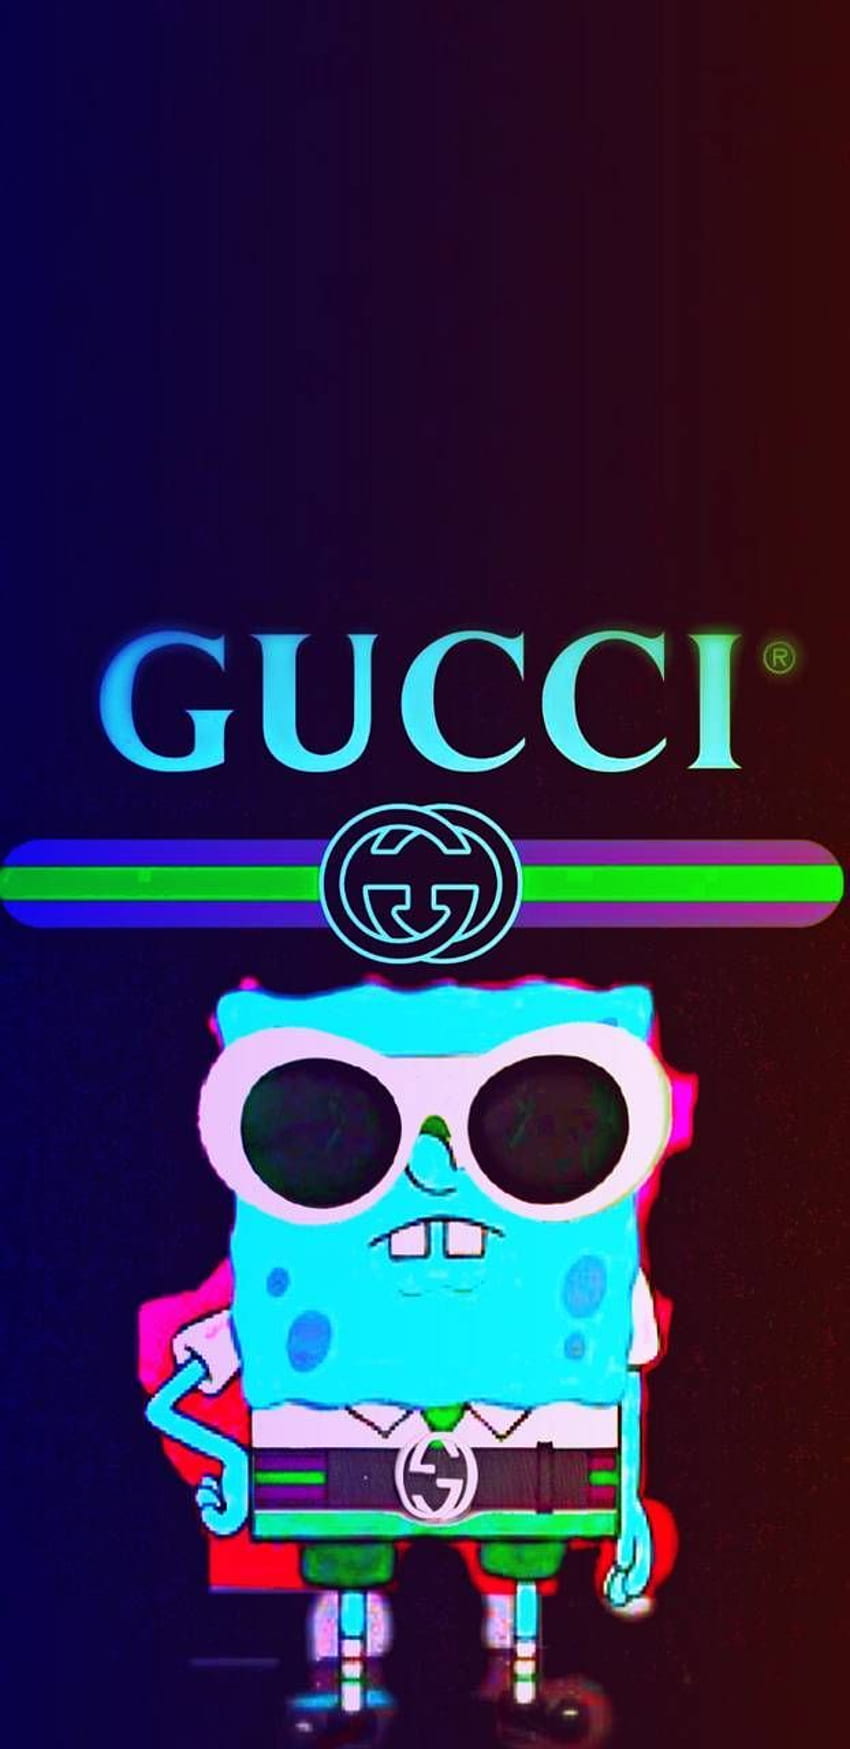 Gucci And Supreme, Cool Supreme Gucci HD phone wallpaper | Pxfuel